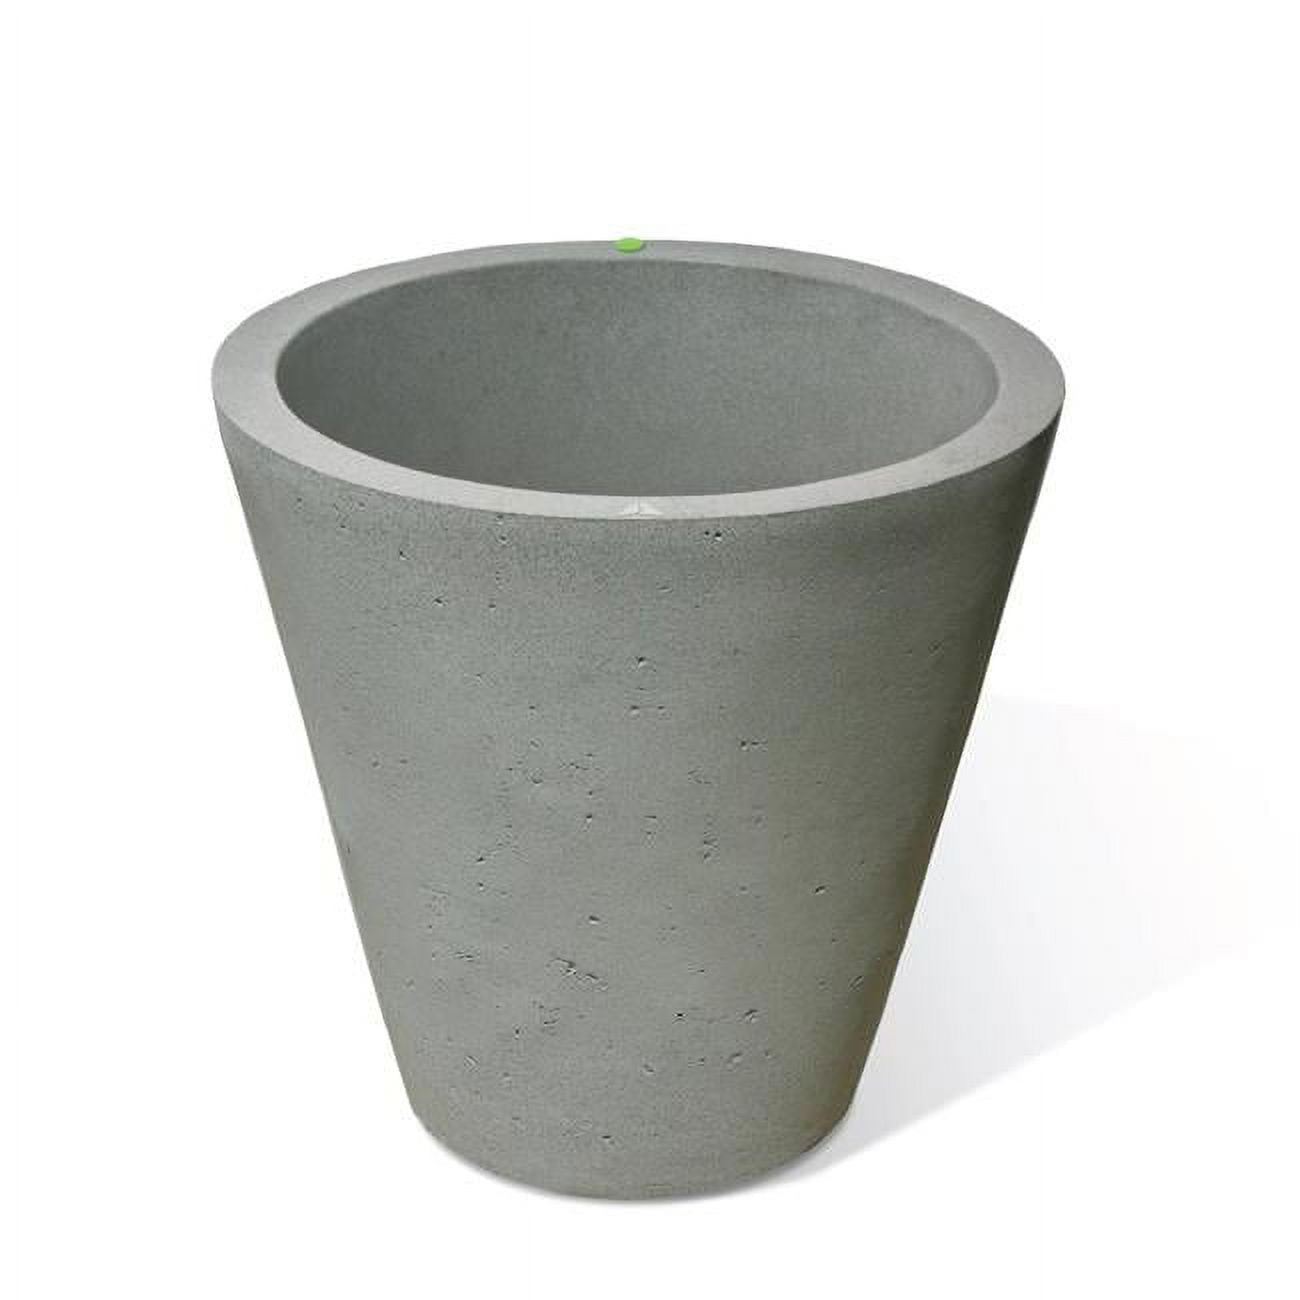 89808 26.5 X 26 In. Crete Self Watering Planter - Concrete Texture - Taupestone